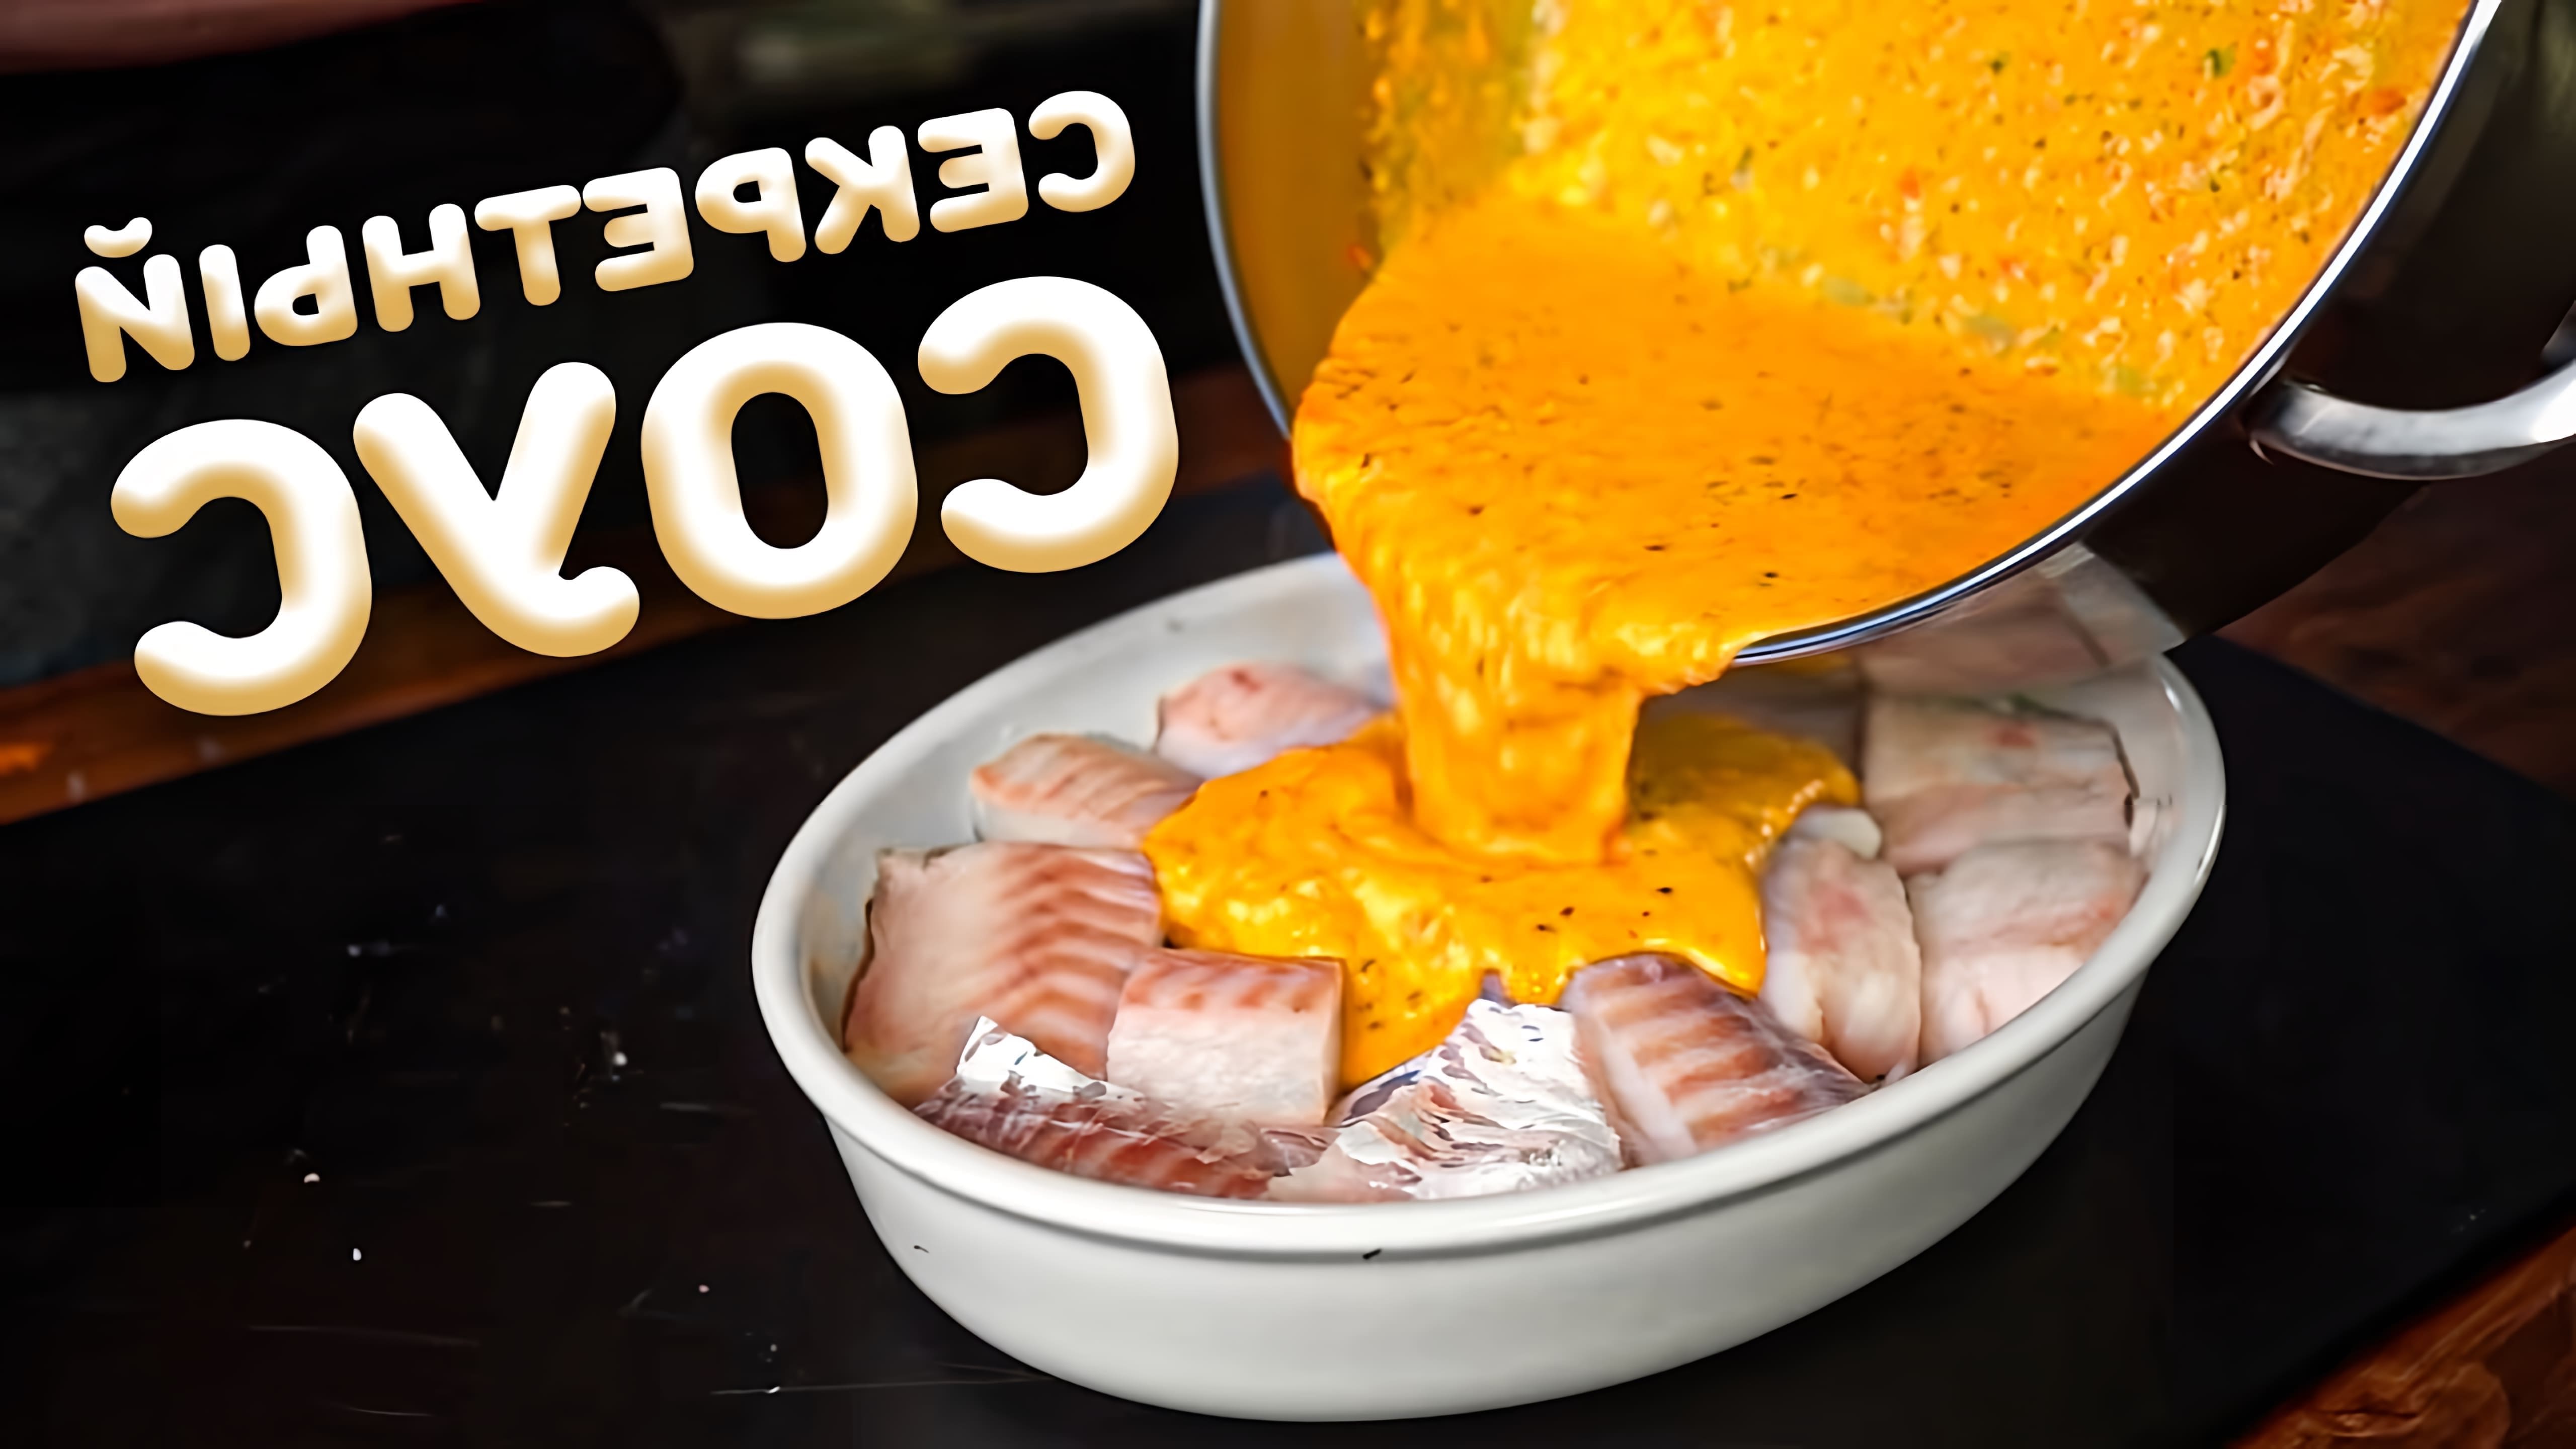 Видео представляет рецепт запекания трески в ароматном соусе из болгарского перца, чеснока и базилика